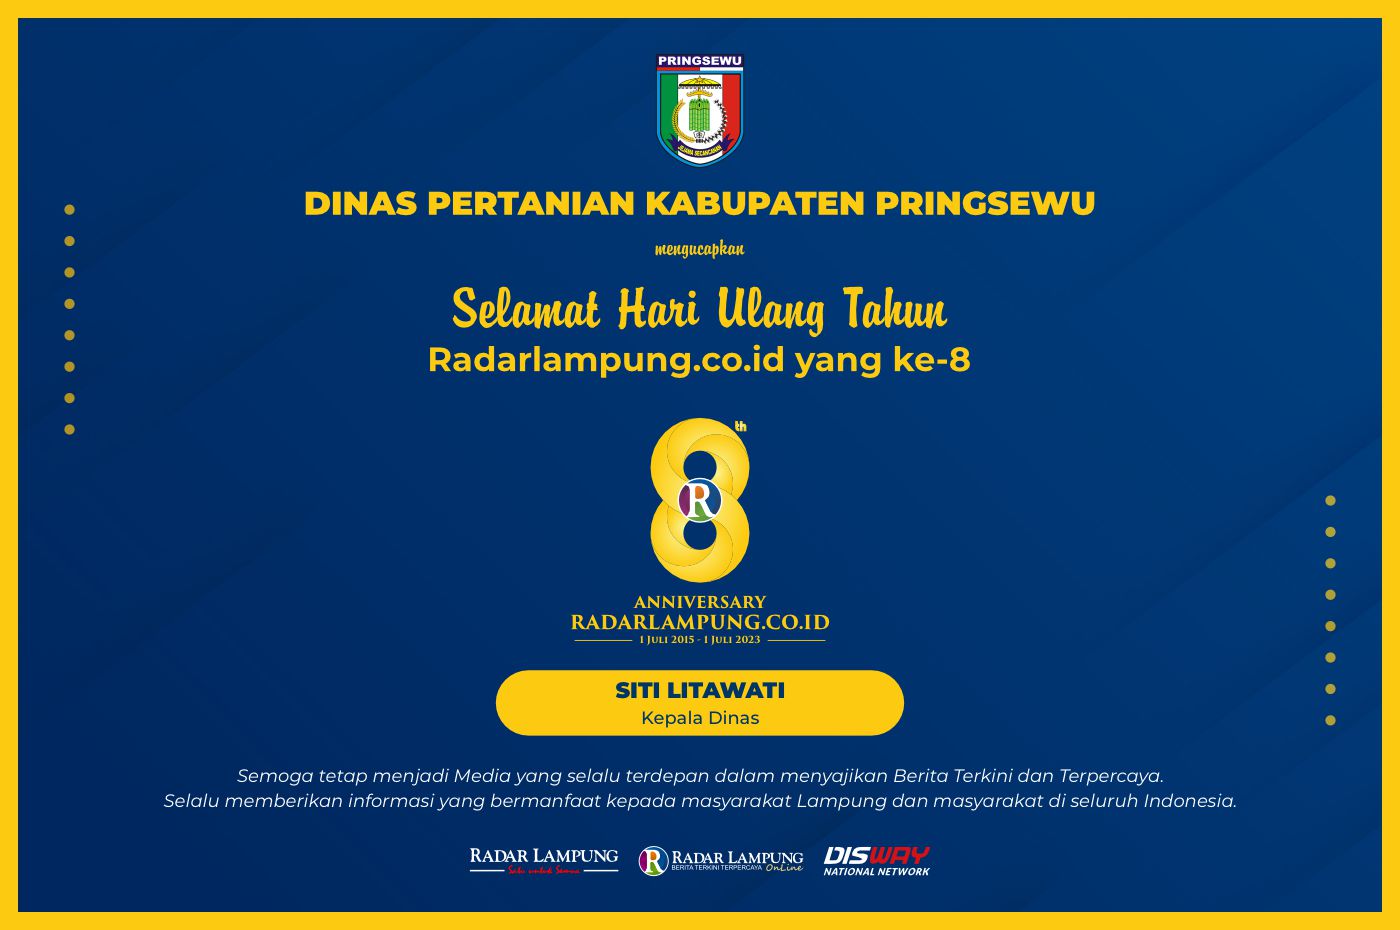 Dinas Pertanian Kabupaten Pringsewu: Selamat Ulang Tahun ke-8 Radar Lampung Online